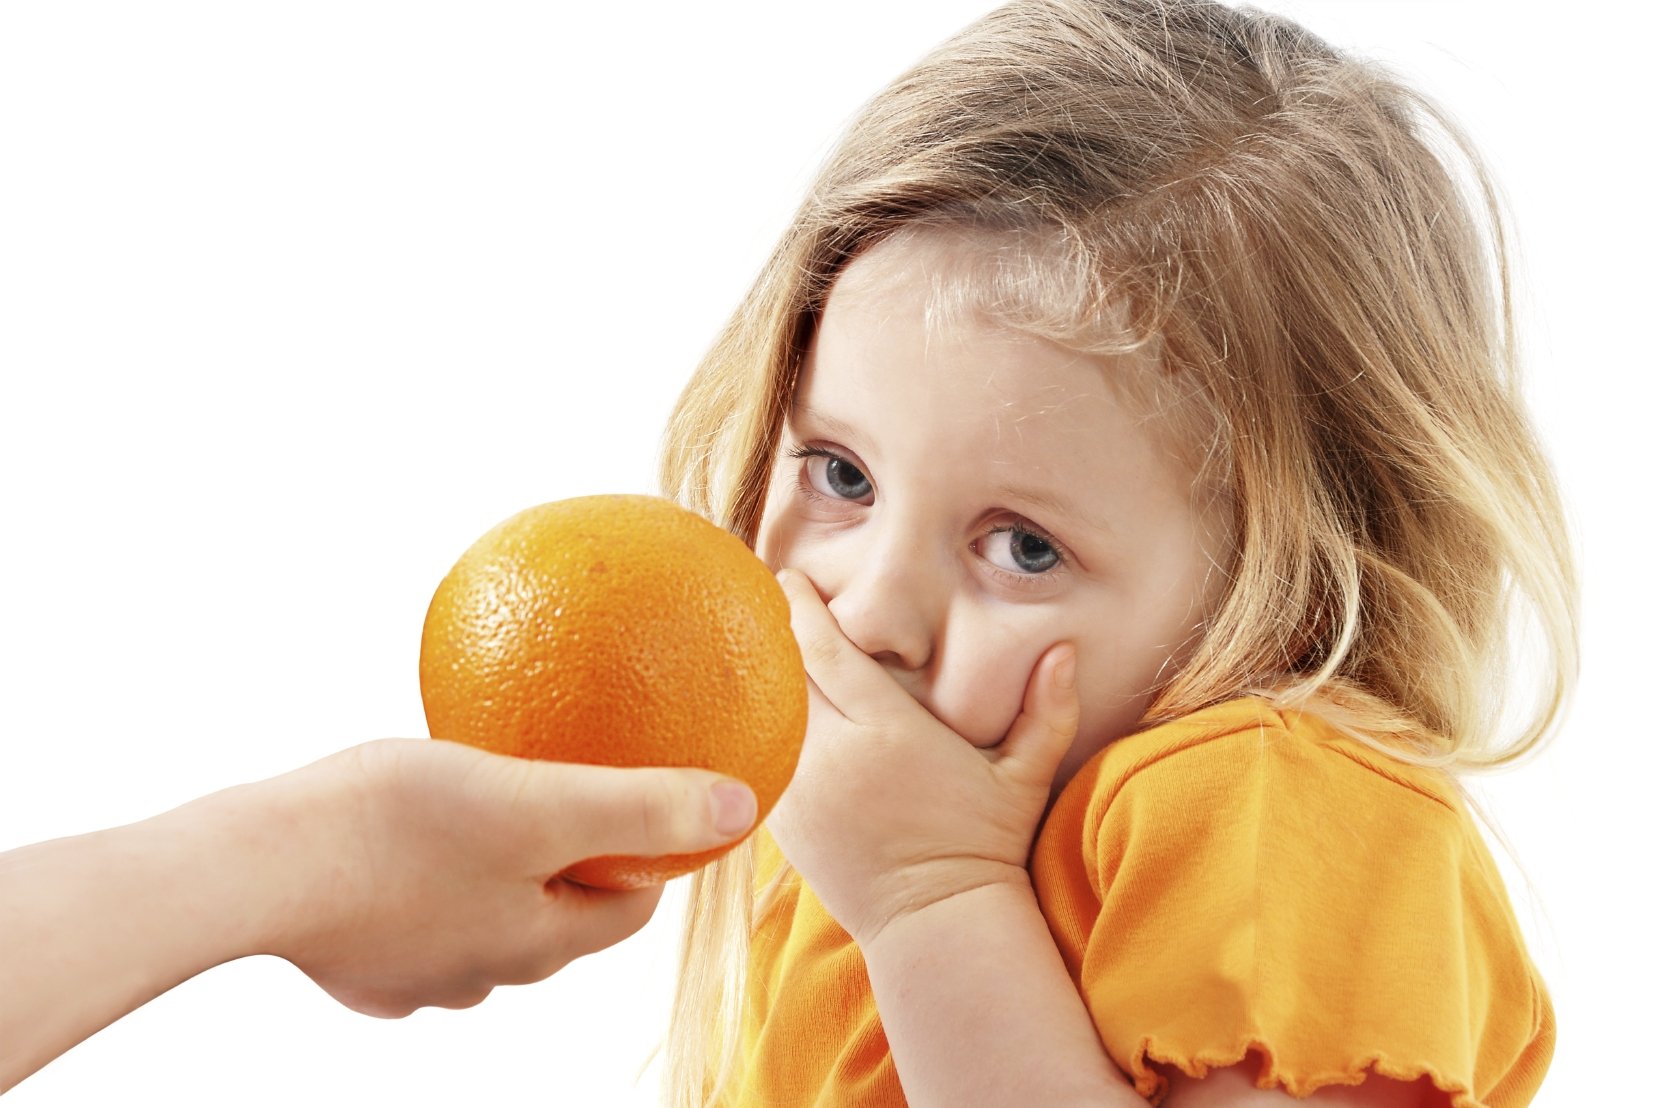 She likes oranges. Апельсин для детей. Девочка с мандаринами.